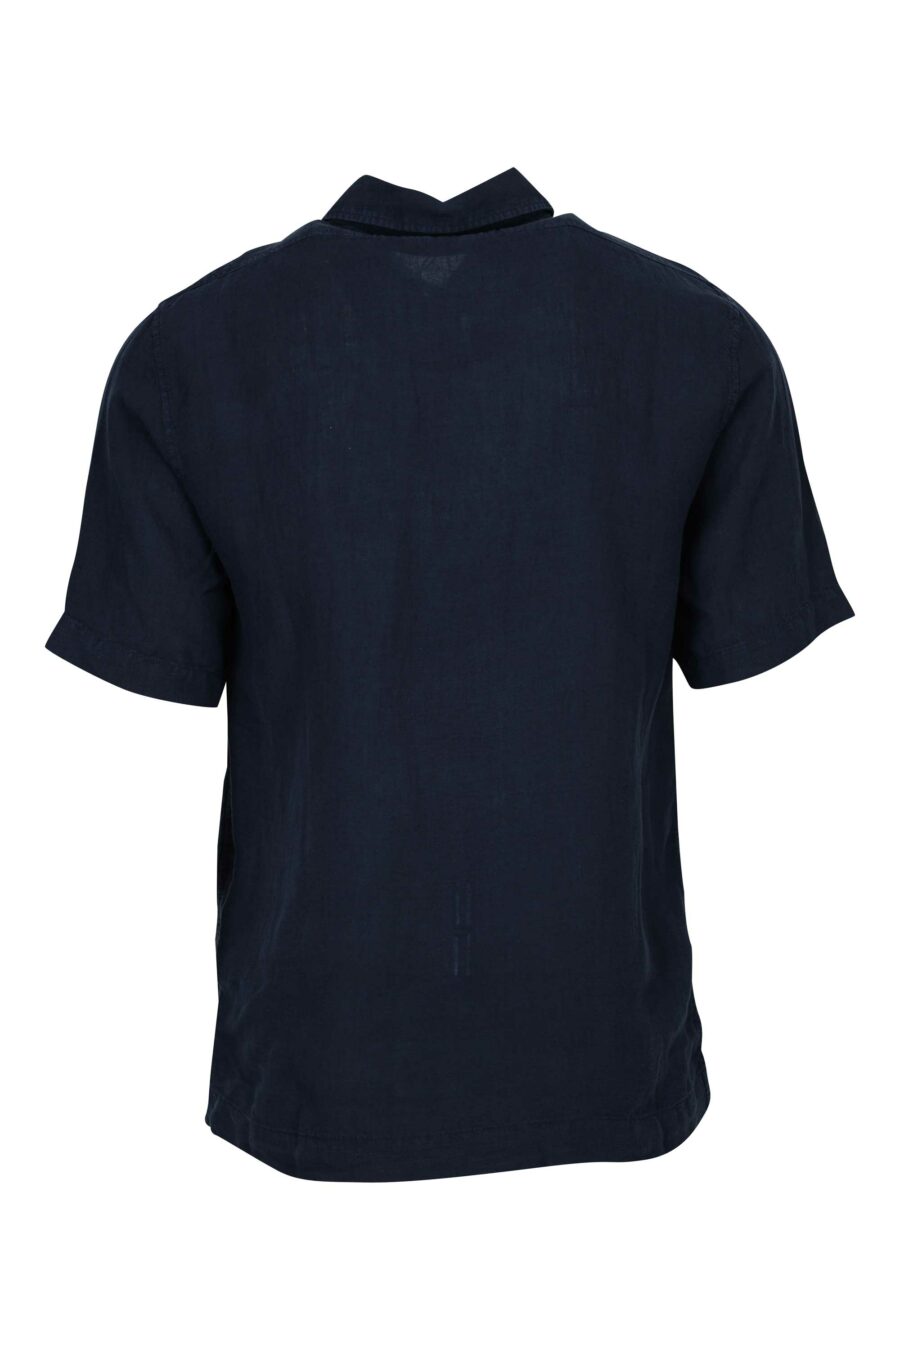 Chemise à manches courtes bleu foncé avec boutons et poches avec mini-logo - 7620943812053 1